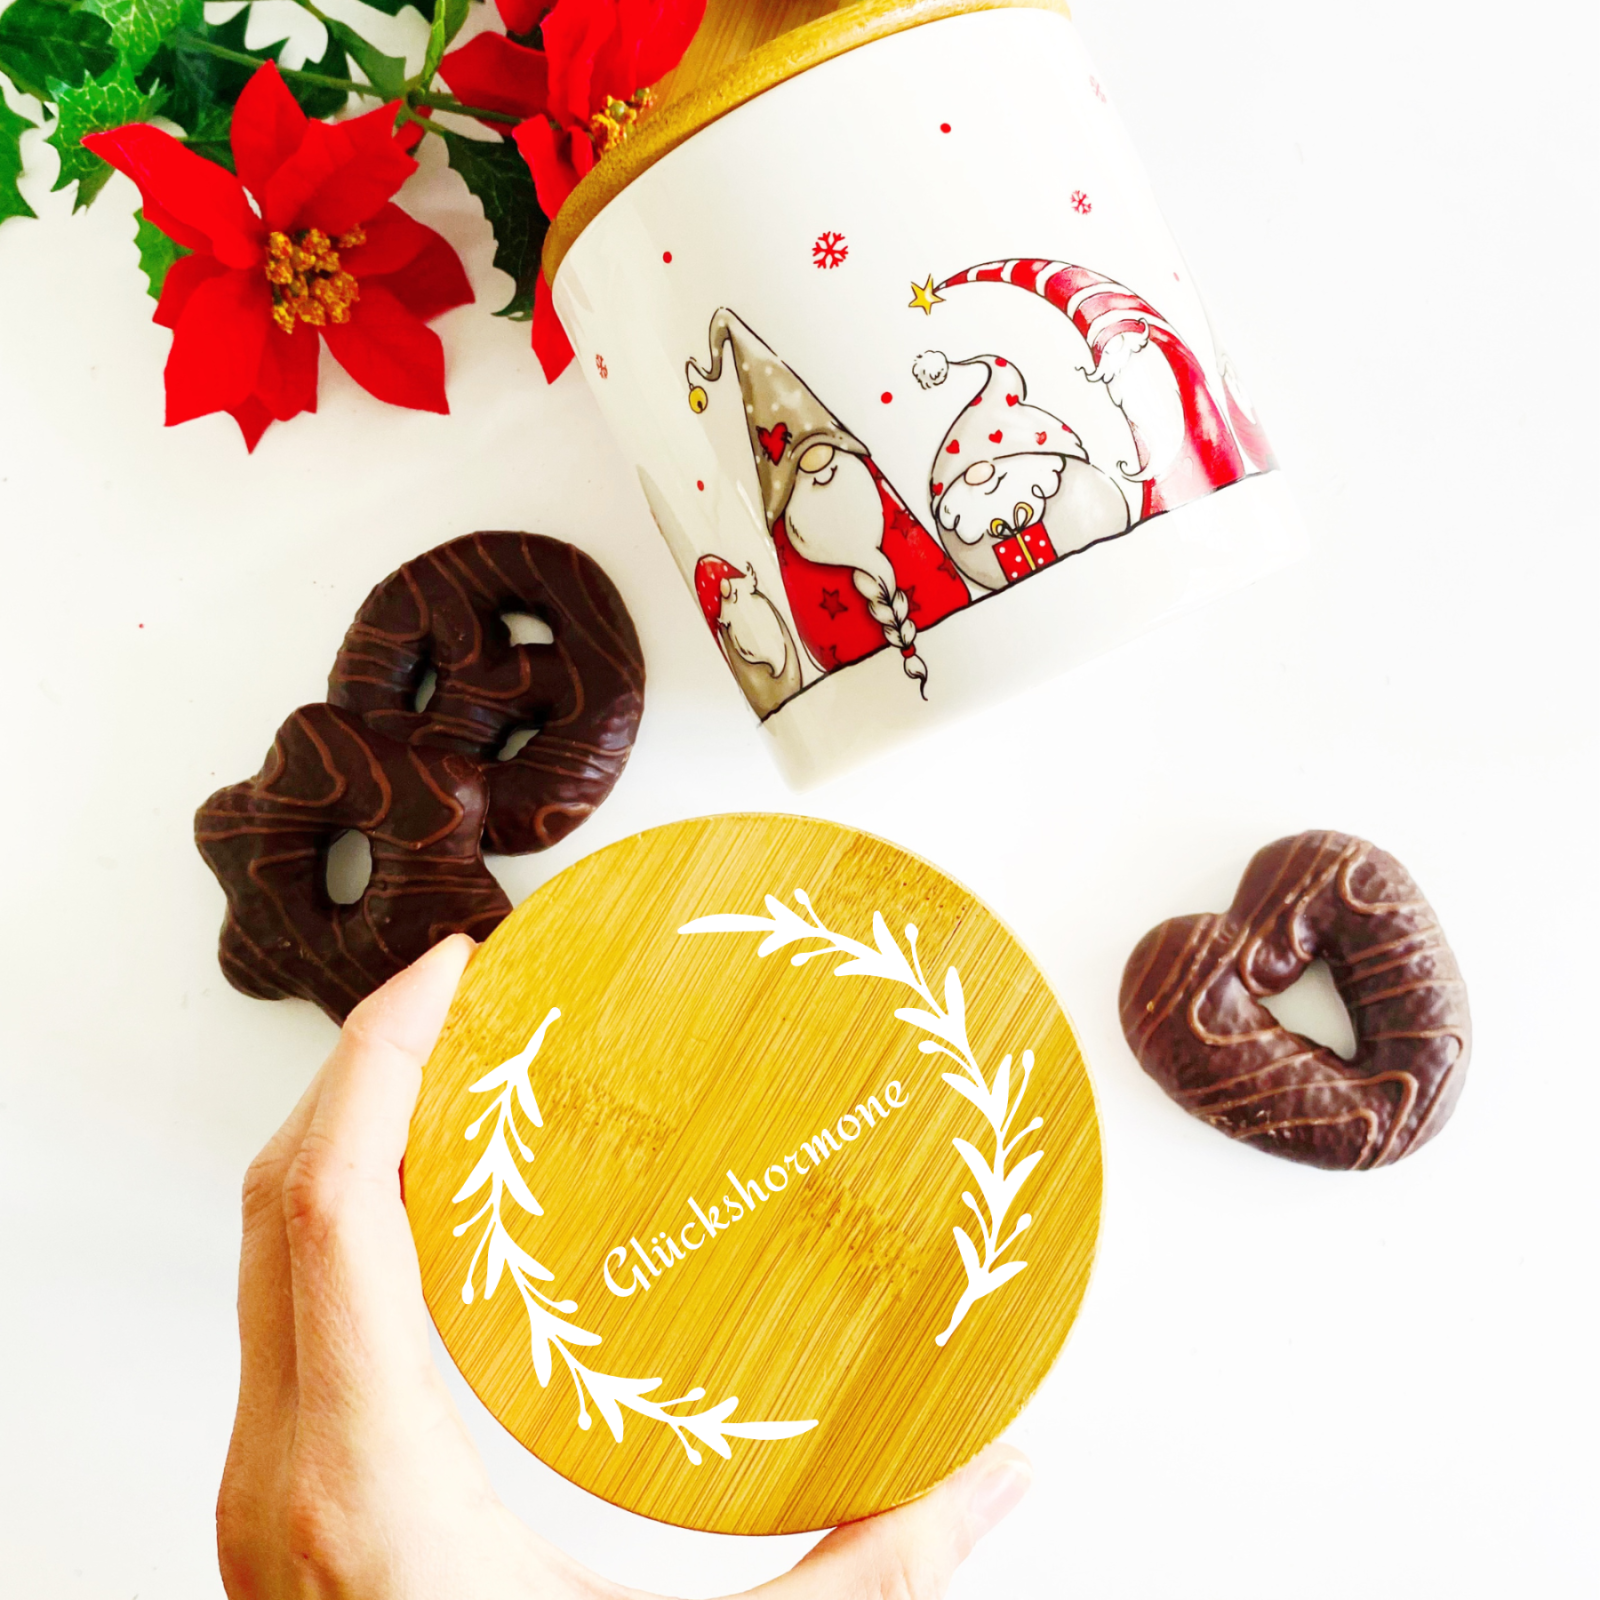 Personalisierte Keksdose Plätzchendose, Geschenkidee zu Weihnachten, Vorratsdose Keramik mit